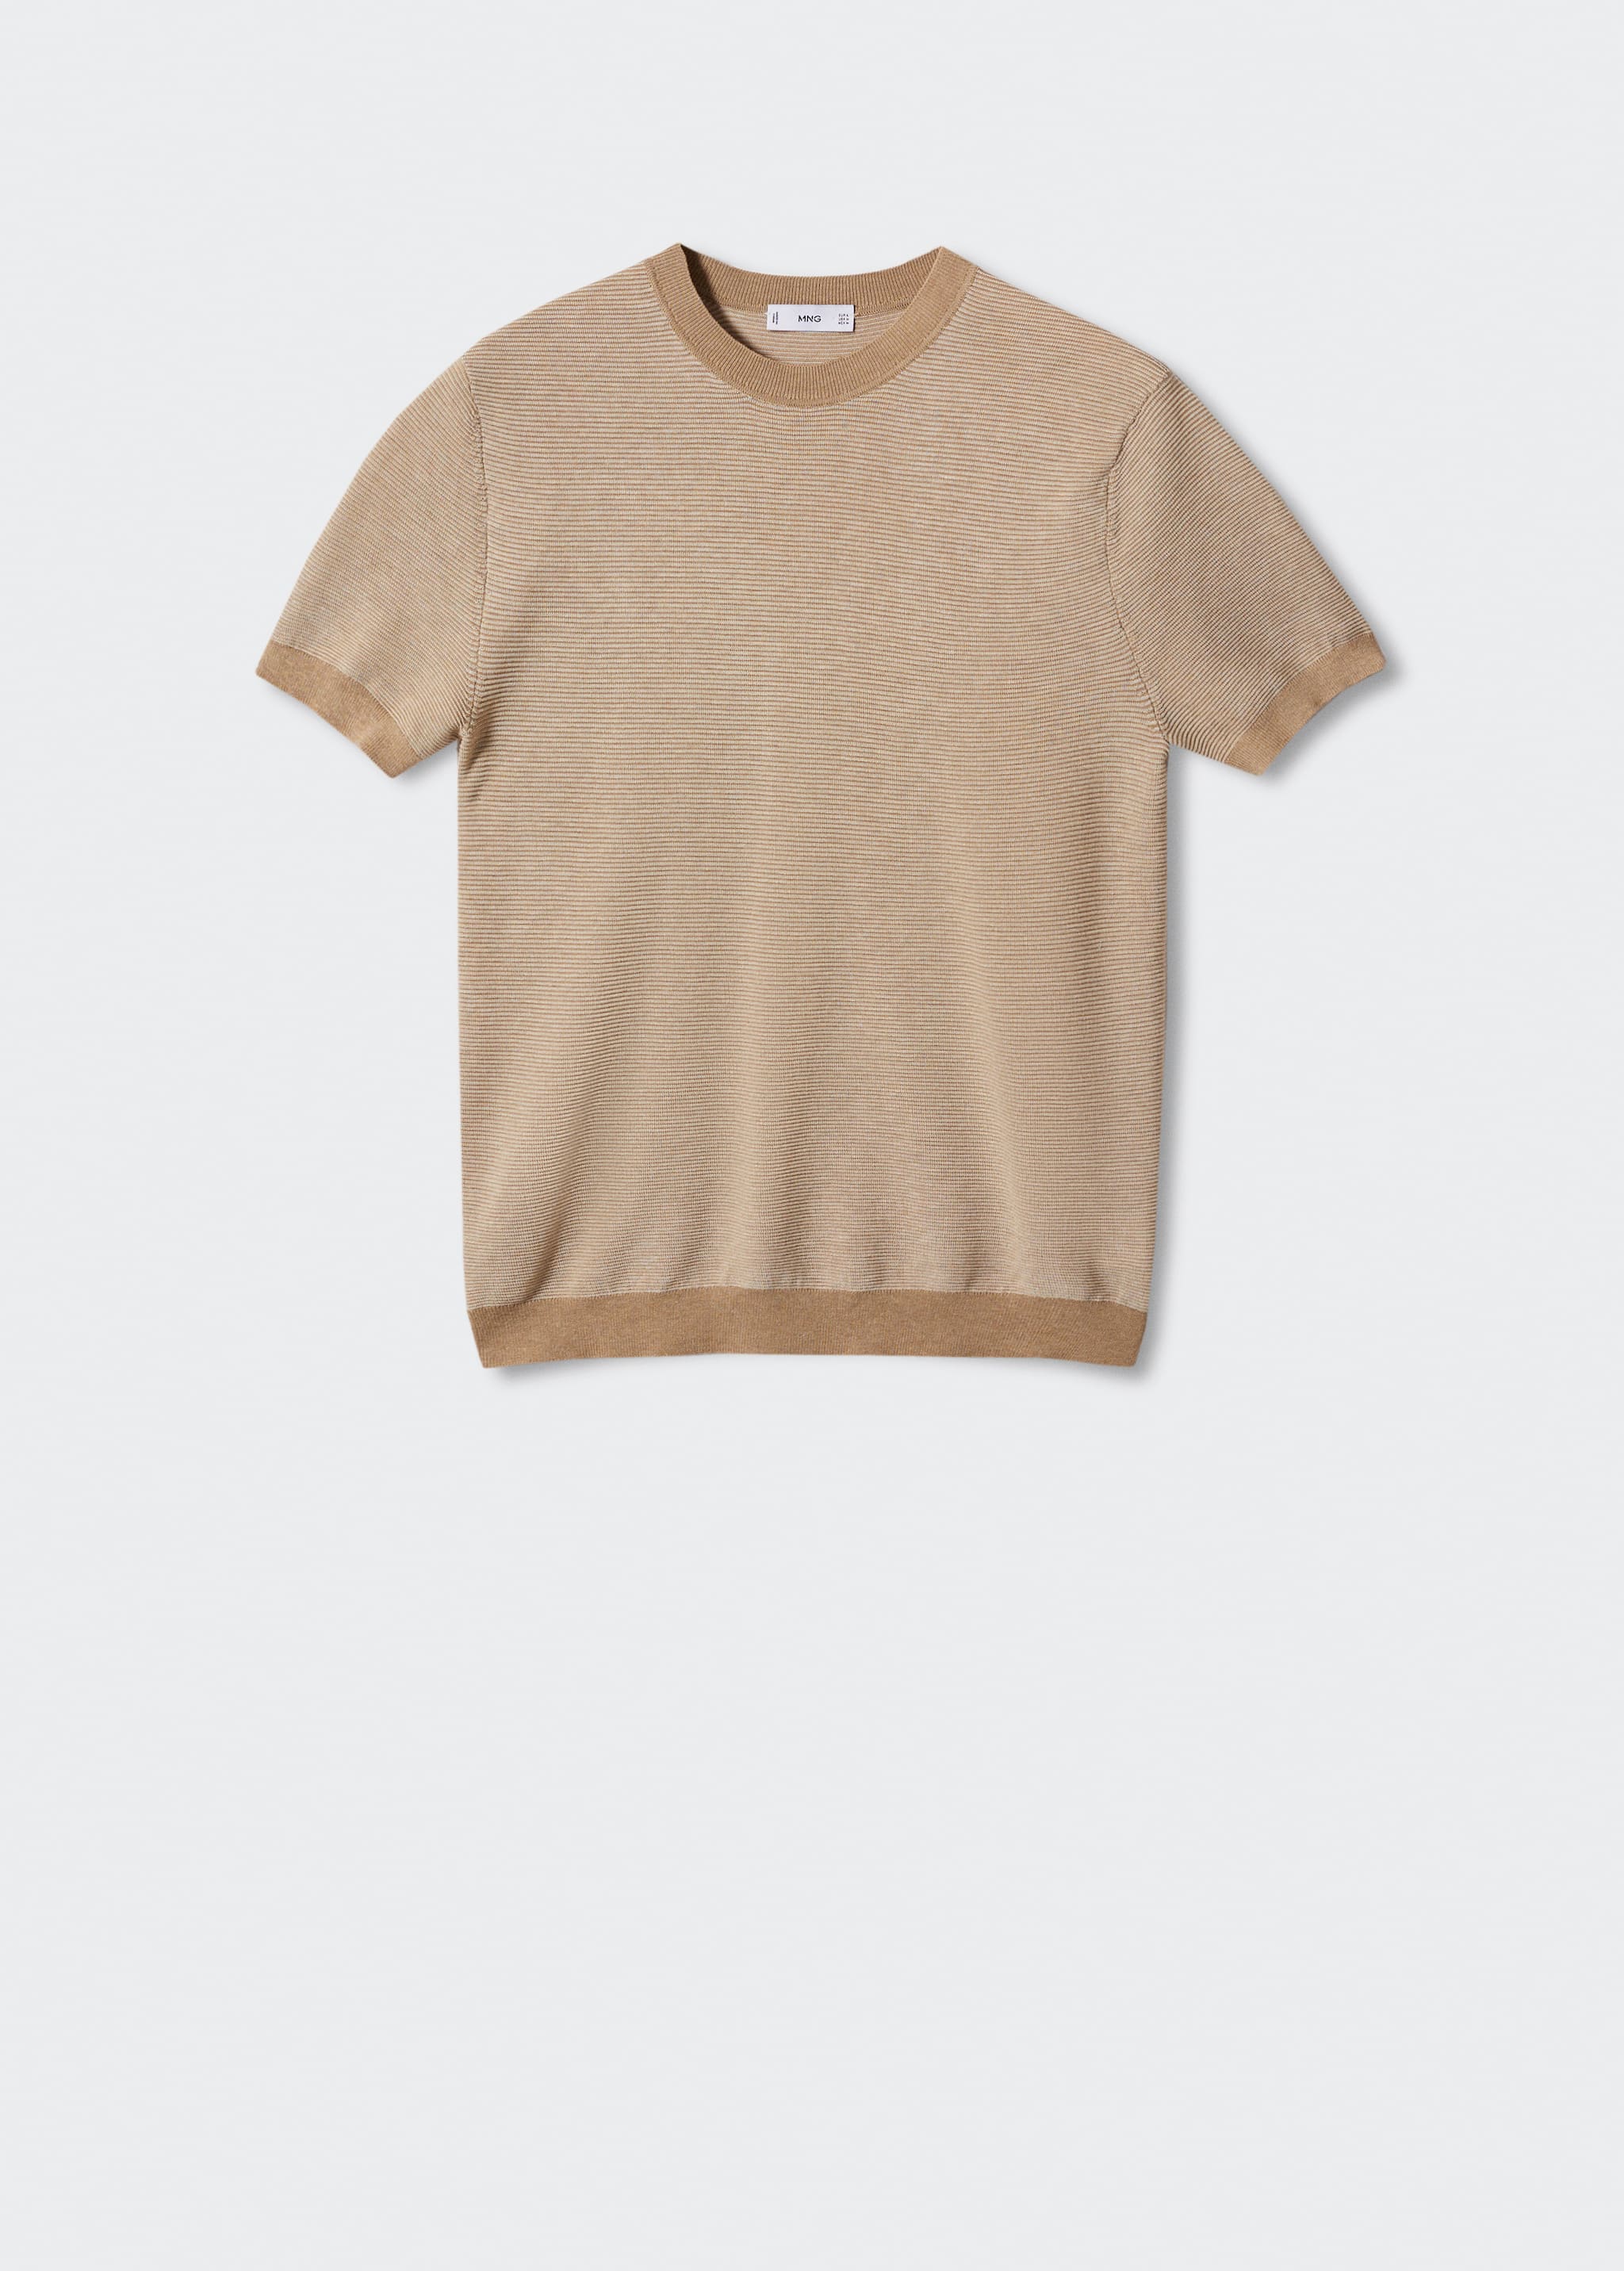 Camiseta punto textura - Artículo sin modelo